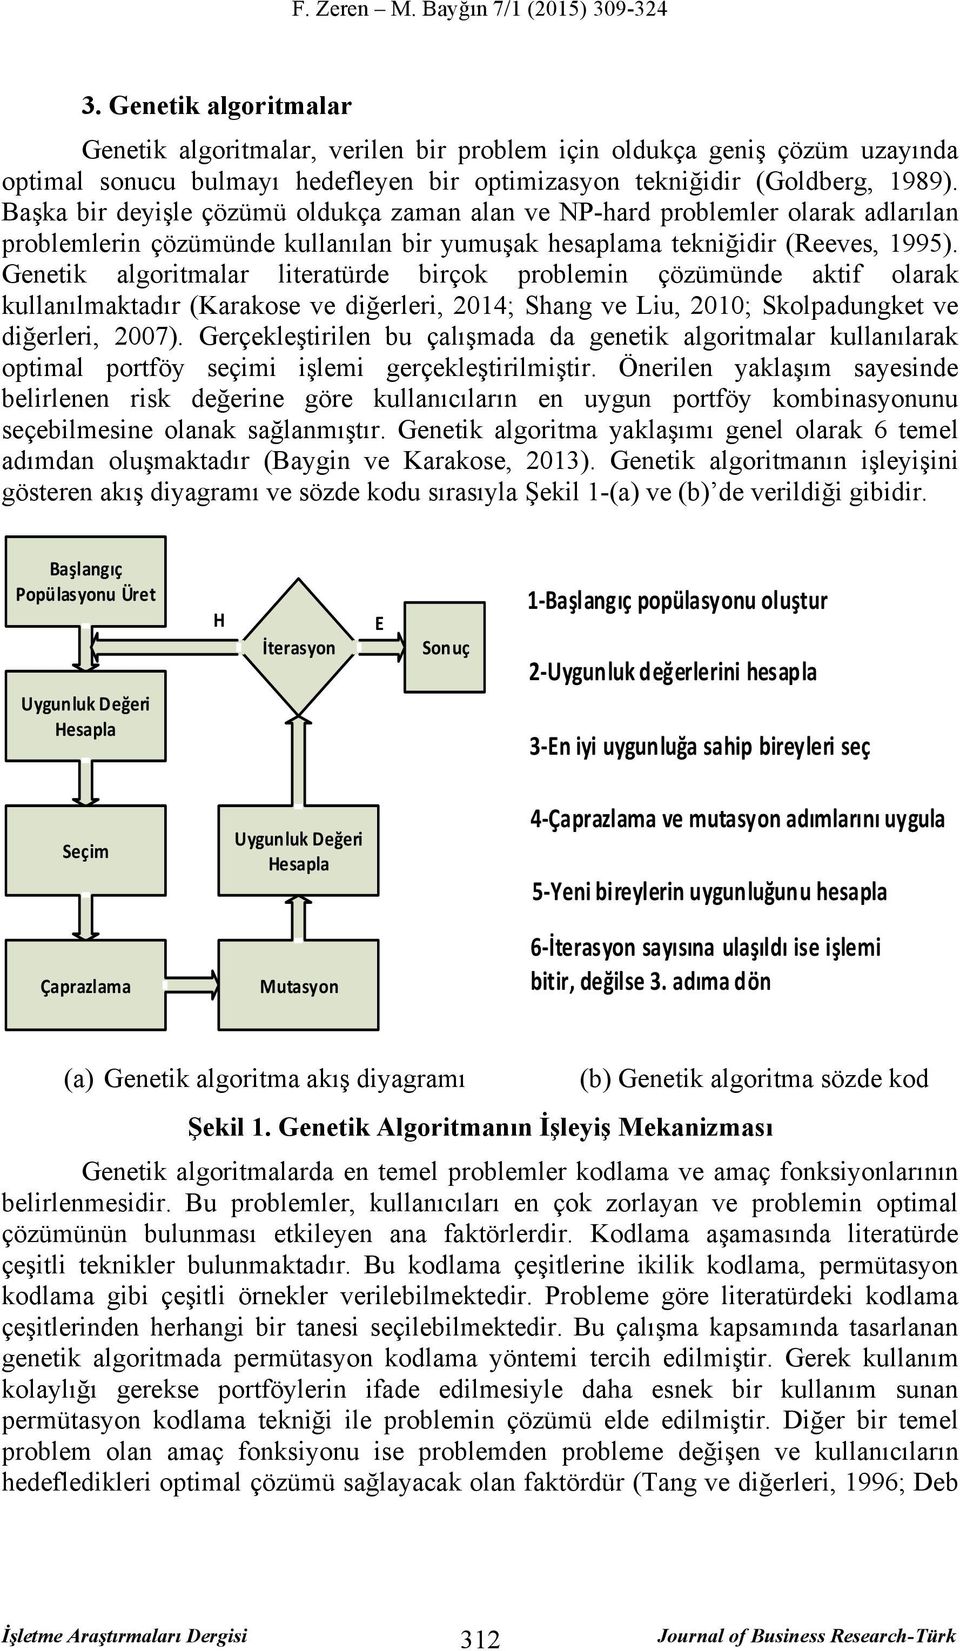 Genetik algoritmalar literatürde birçok problemin çözümünde aktif olarak kullanılmaktadır (Karakose ve diğerleri, 2014; Shang ve Liu, 2010; Skolpadungket ve diğerleri, 2007).